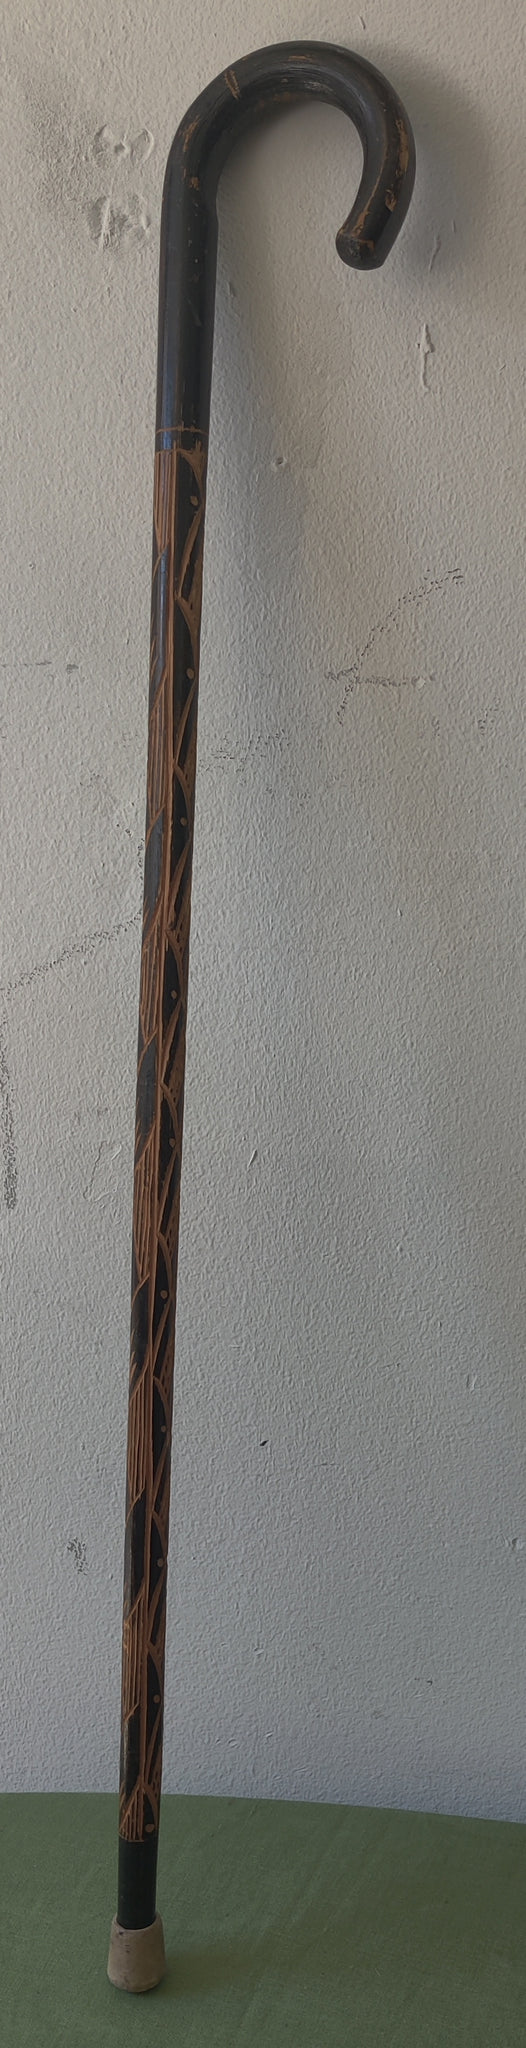 Vintage Hand Carved Wooden Cane